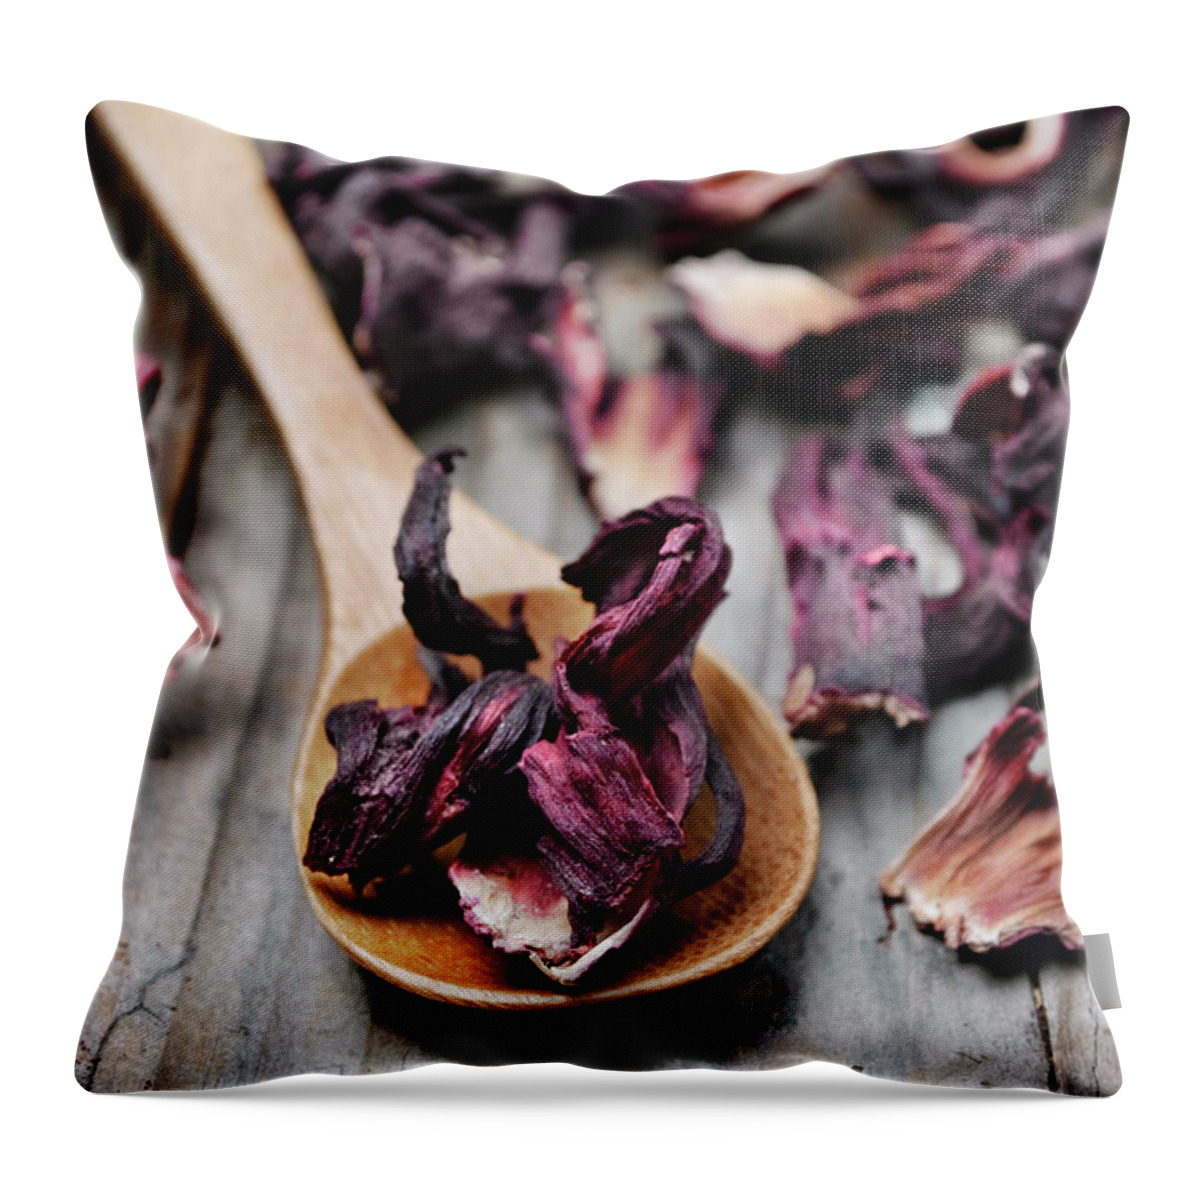 Tea Throw Pillow featuring the photograph Hibiscus Tea #1 by Jelena Jovanovic